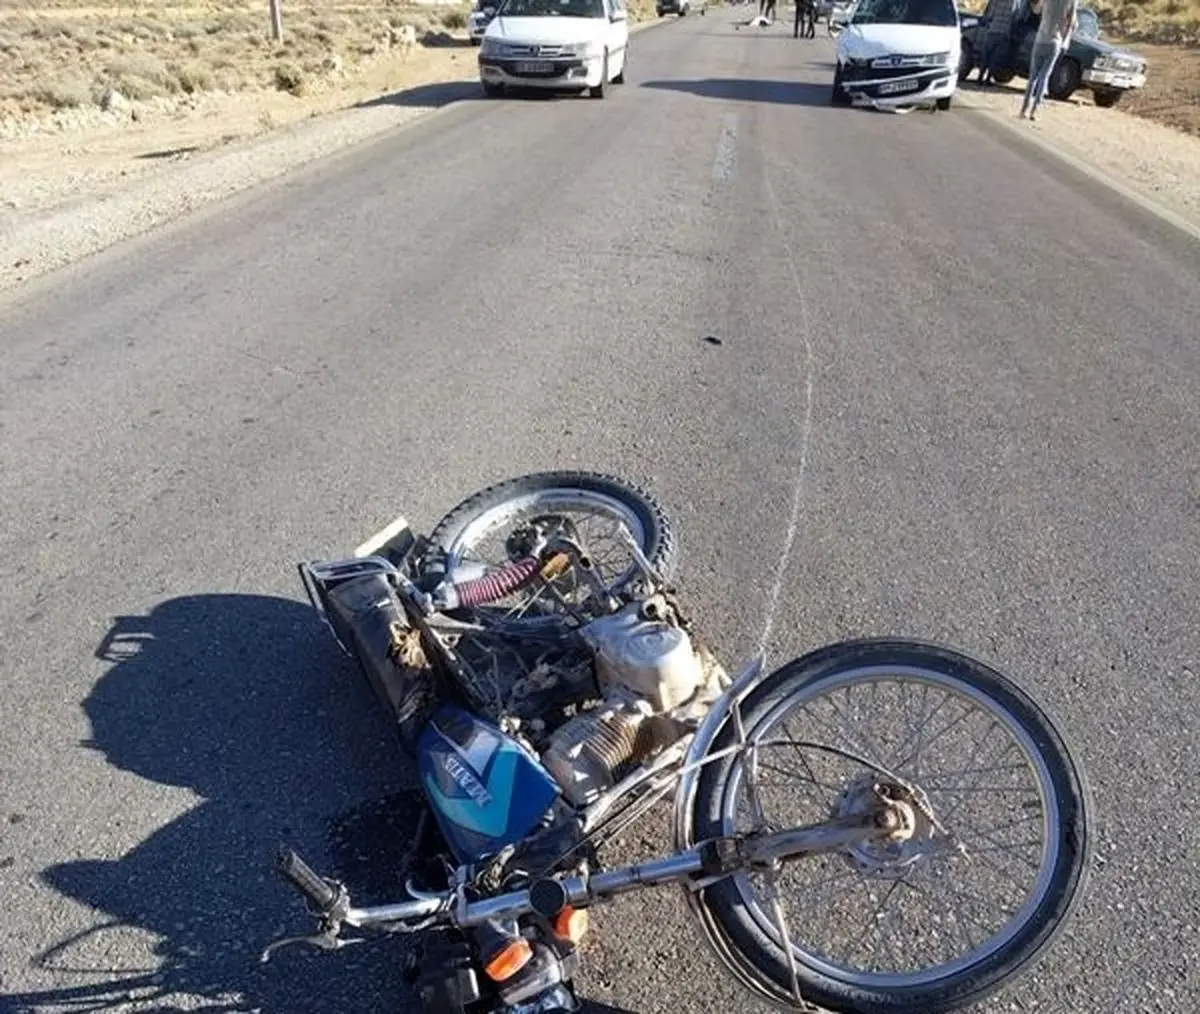 دو کشته و مجروح حاصل برخورد پژو پارس با موتورسیکلت